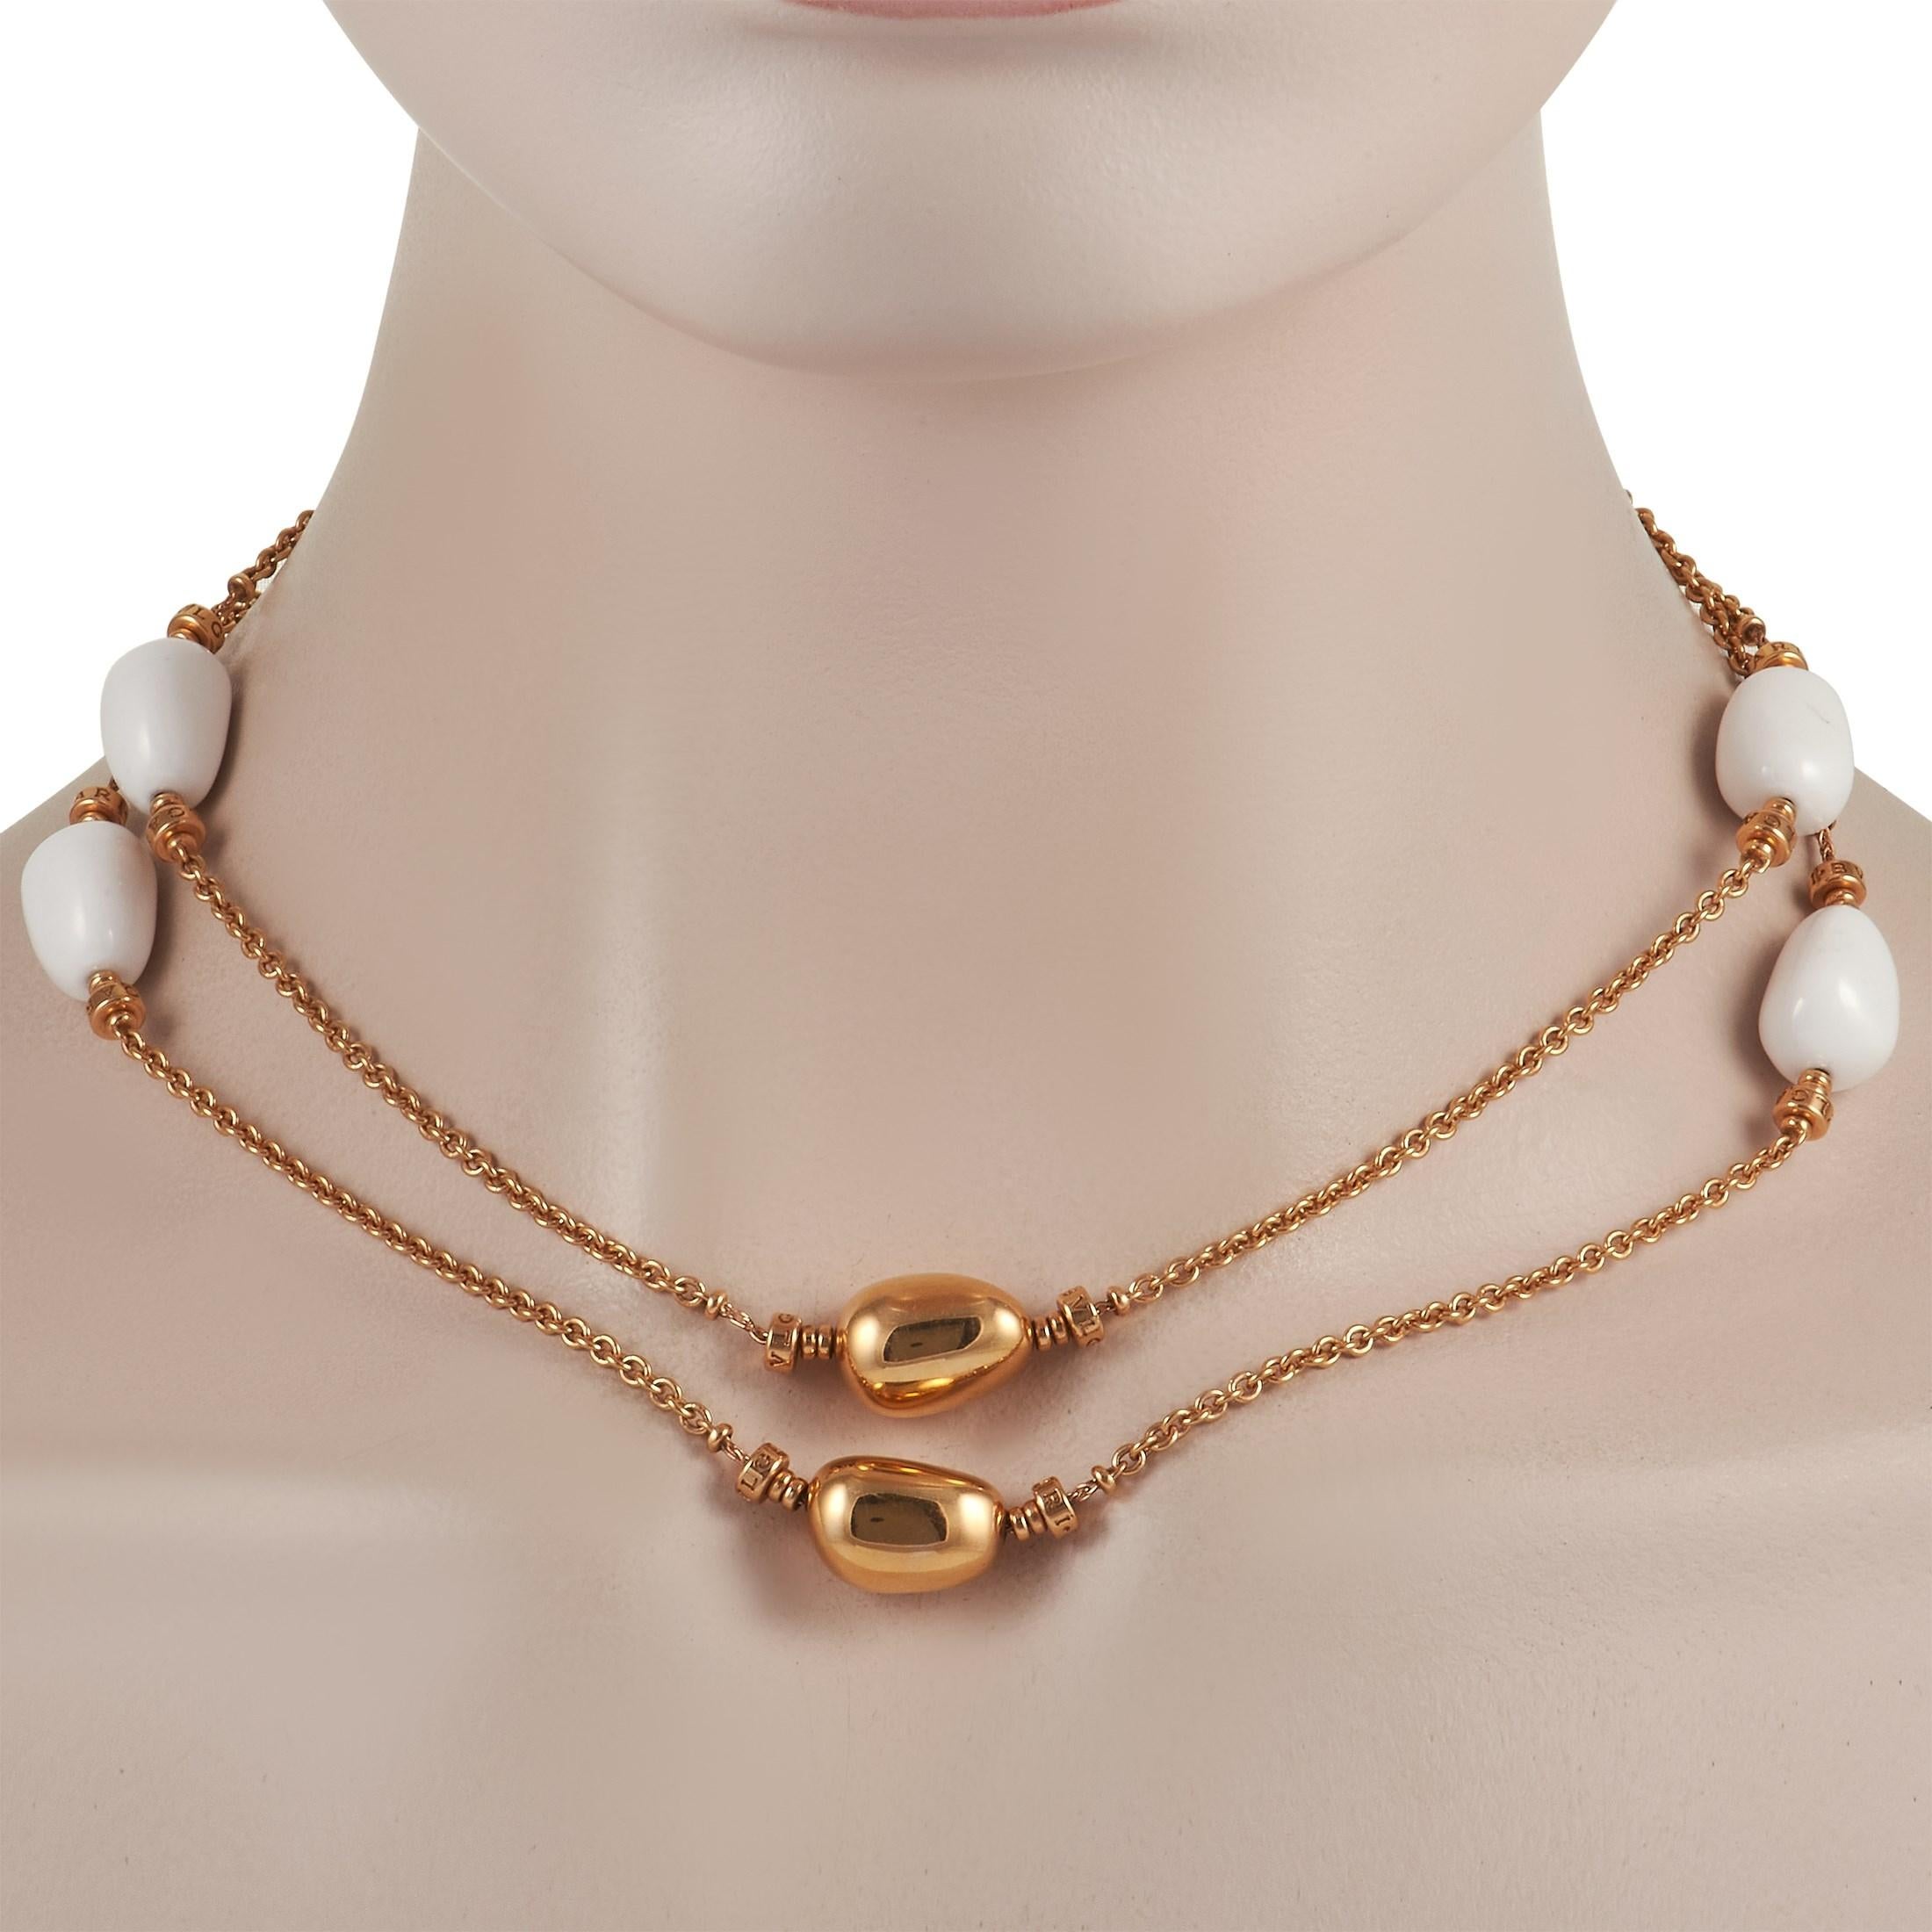 Diese dramatische Bvlgari Mediterranean Eden Halskette ist 34 Zoll lang und verleiht jedem Outfit den perfekten Schliff. An diesem raffinierten Stück finden Sie glatte Akzente aus weißem Achat, die einen schönen Kontrast zu den opulenten